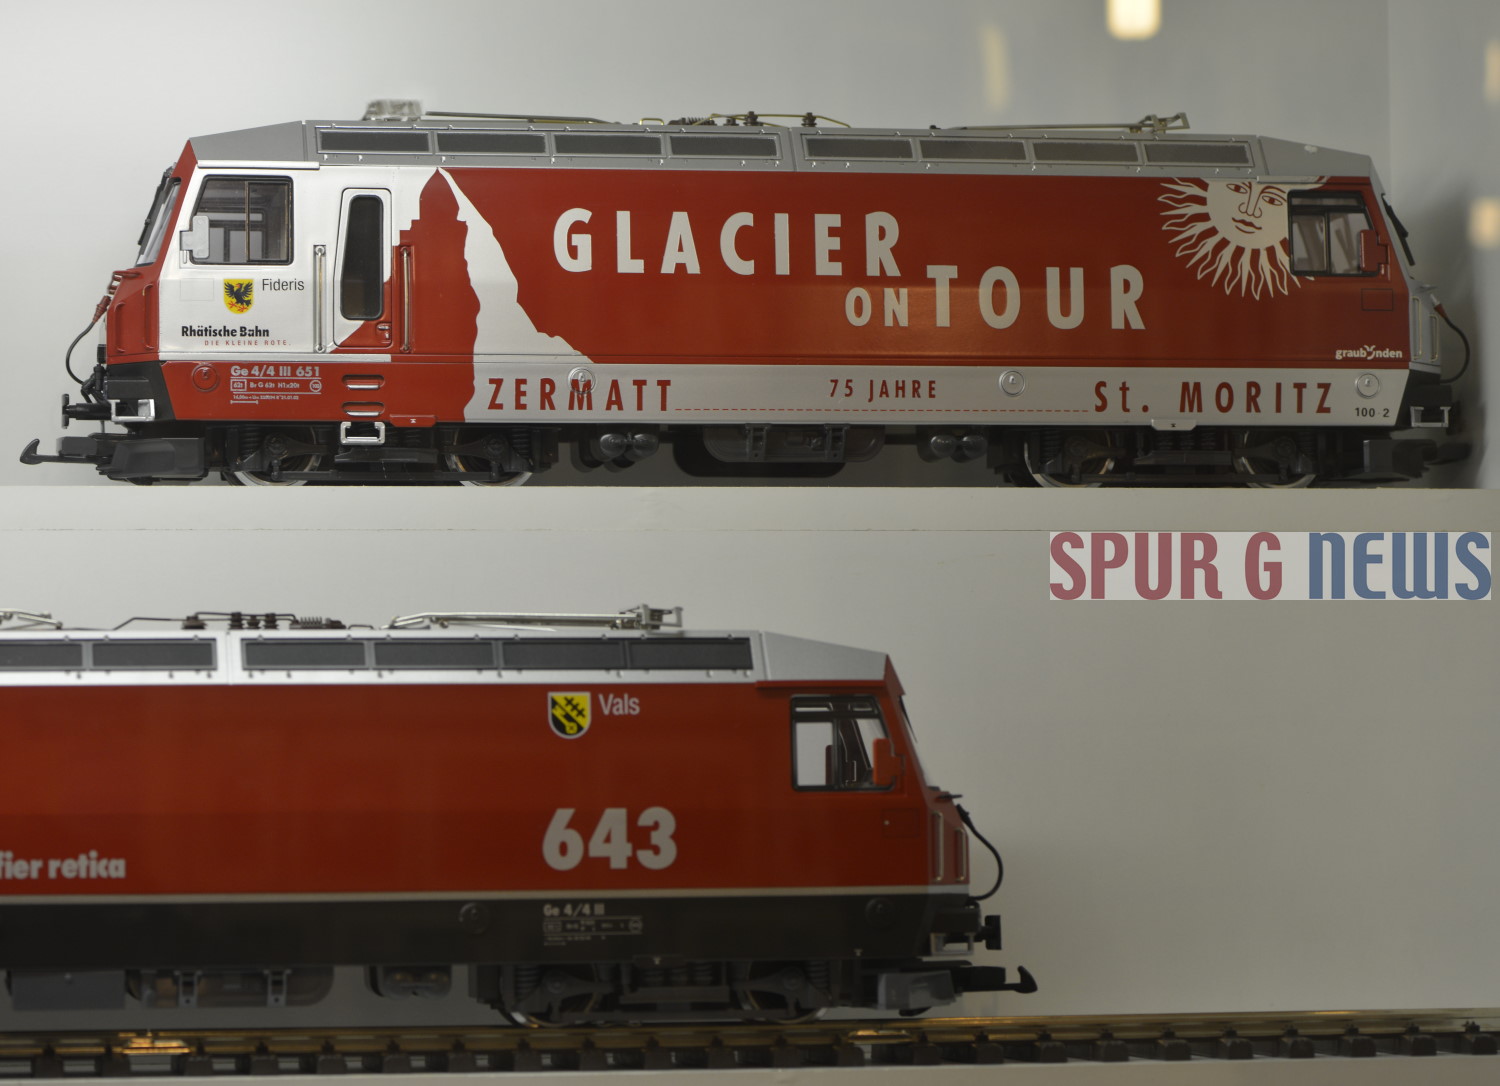 Ge 4/4 III der RhB. 1 x Glacier Express on Tour und 1 x 643 Kanton Vals 